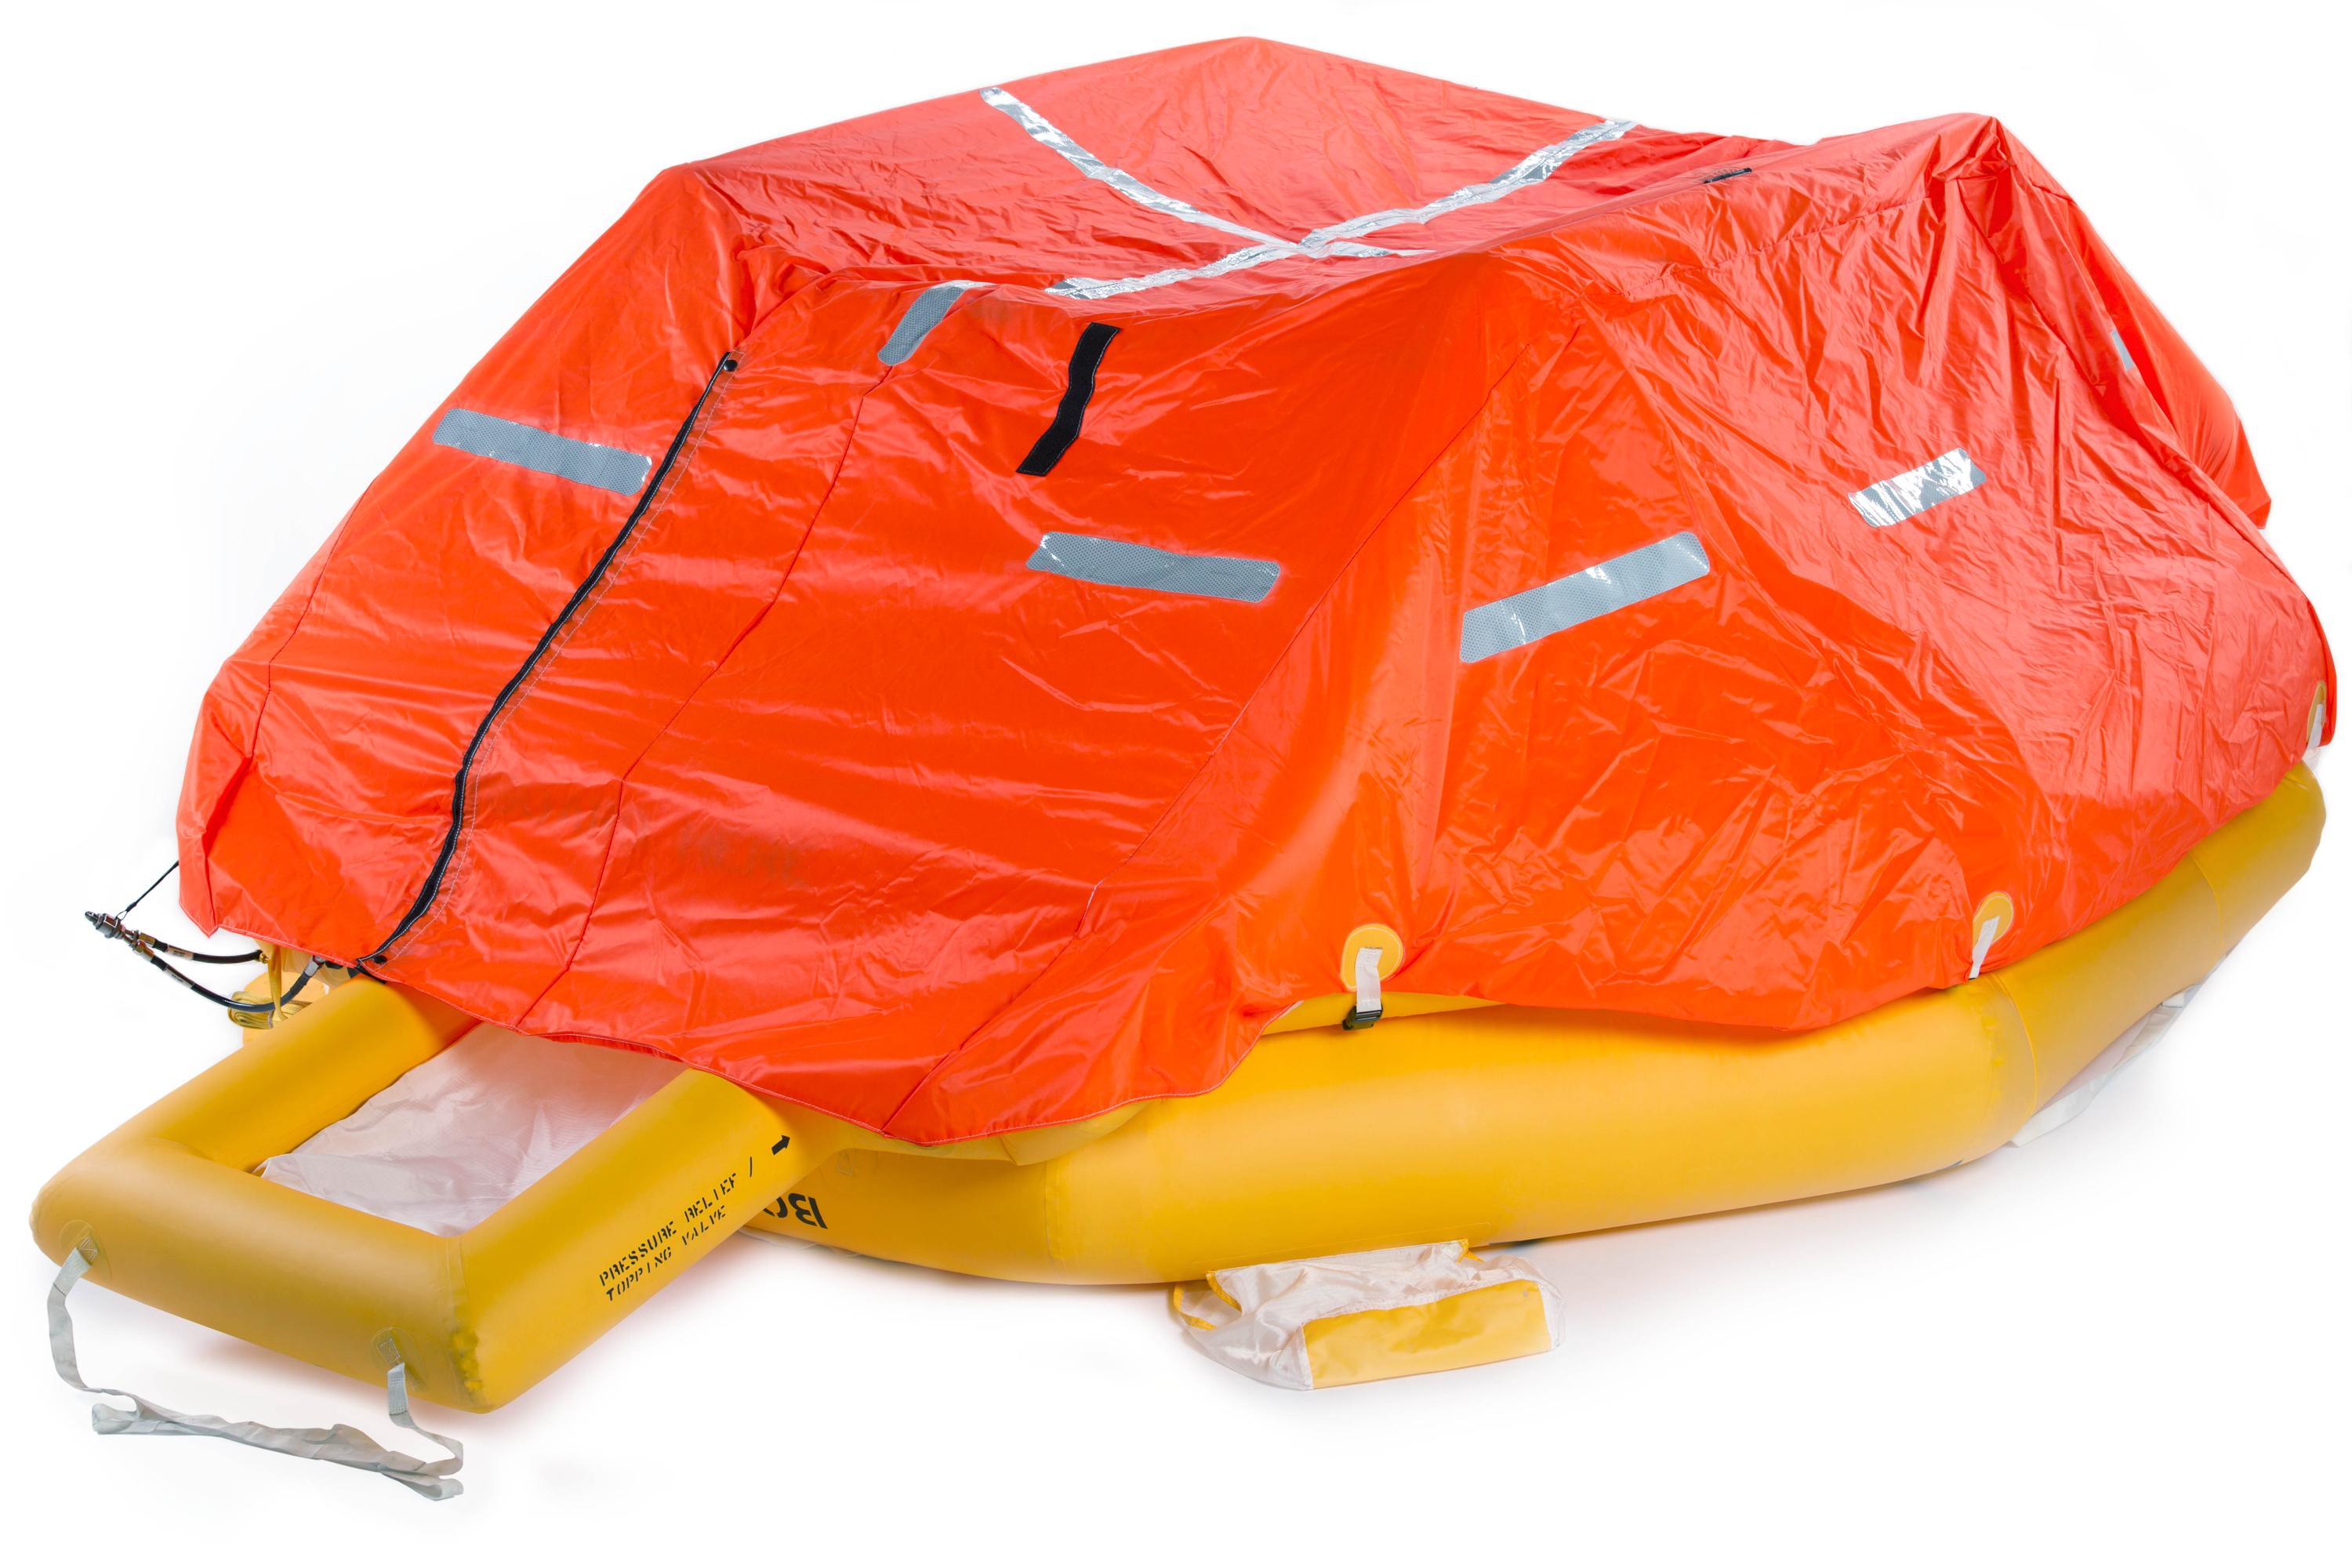 EC135 tri-bag float system with liferafts 